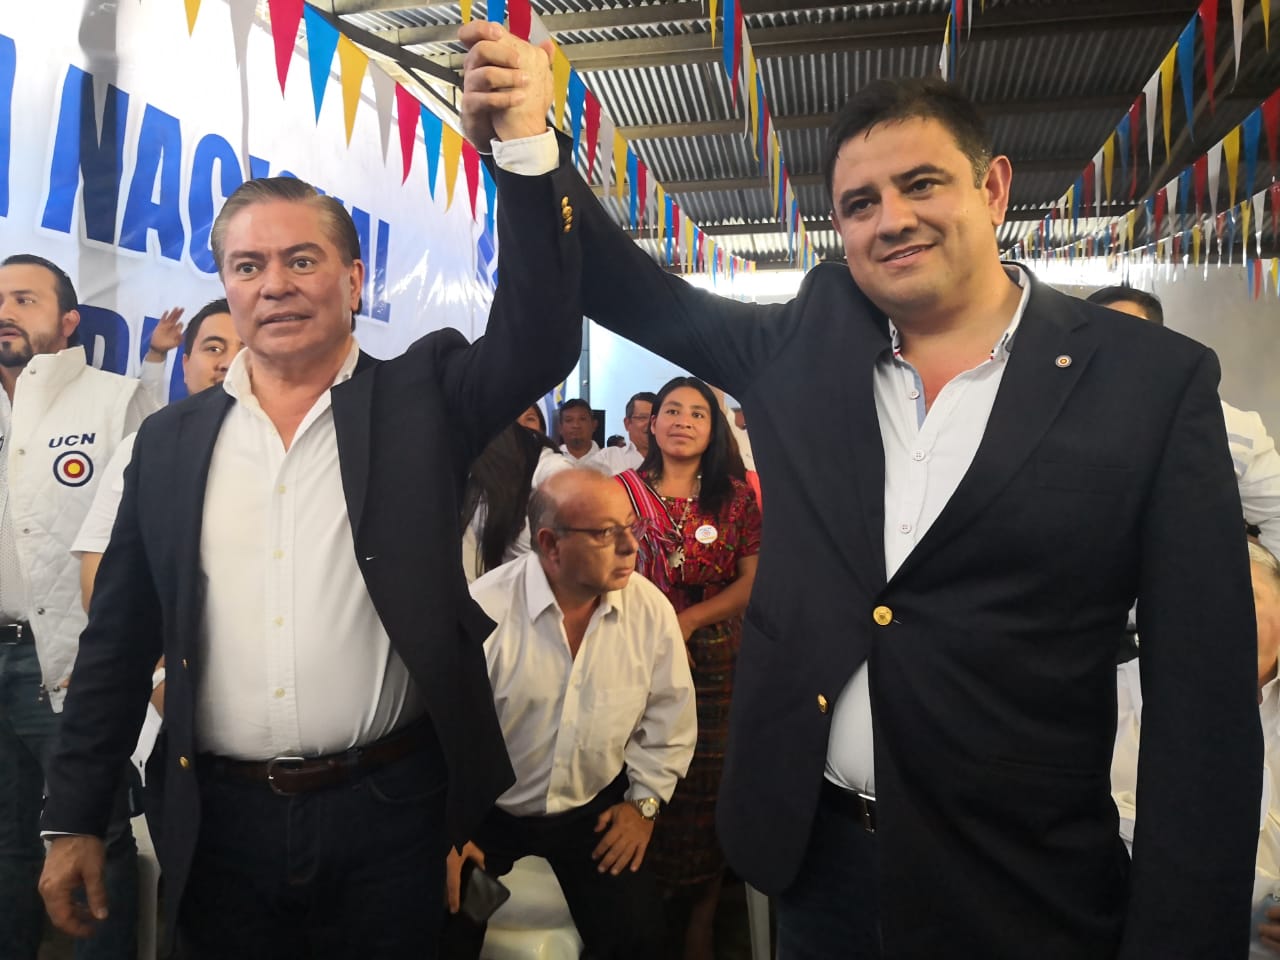 Estos son los 21 candidatos presidenciales para las elecciones generales 2019 en Guatemala